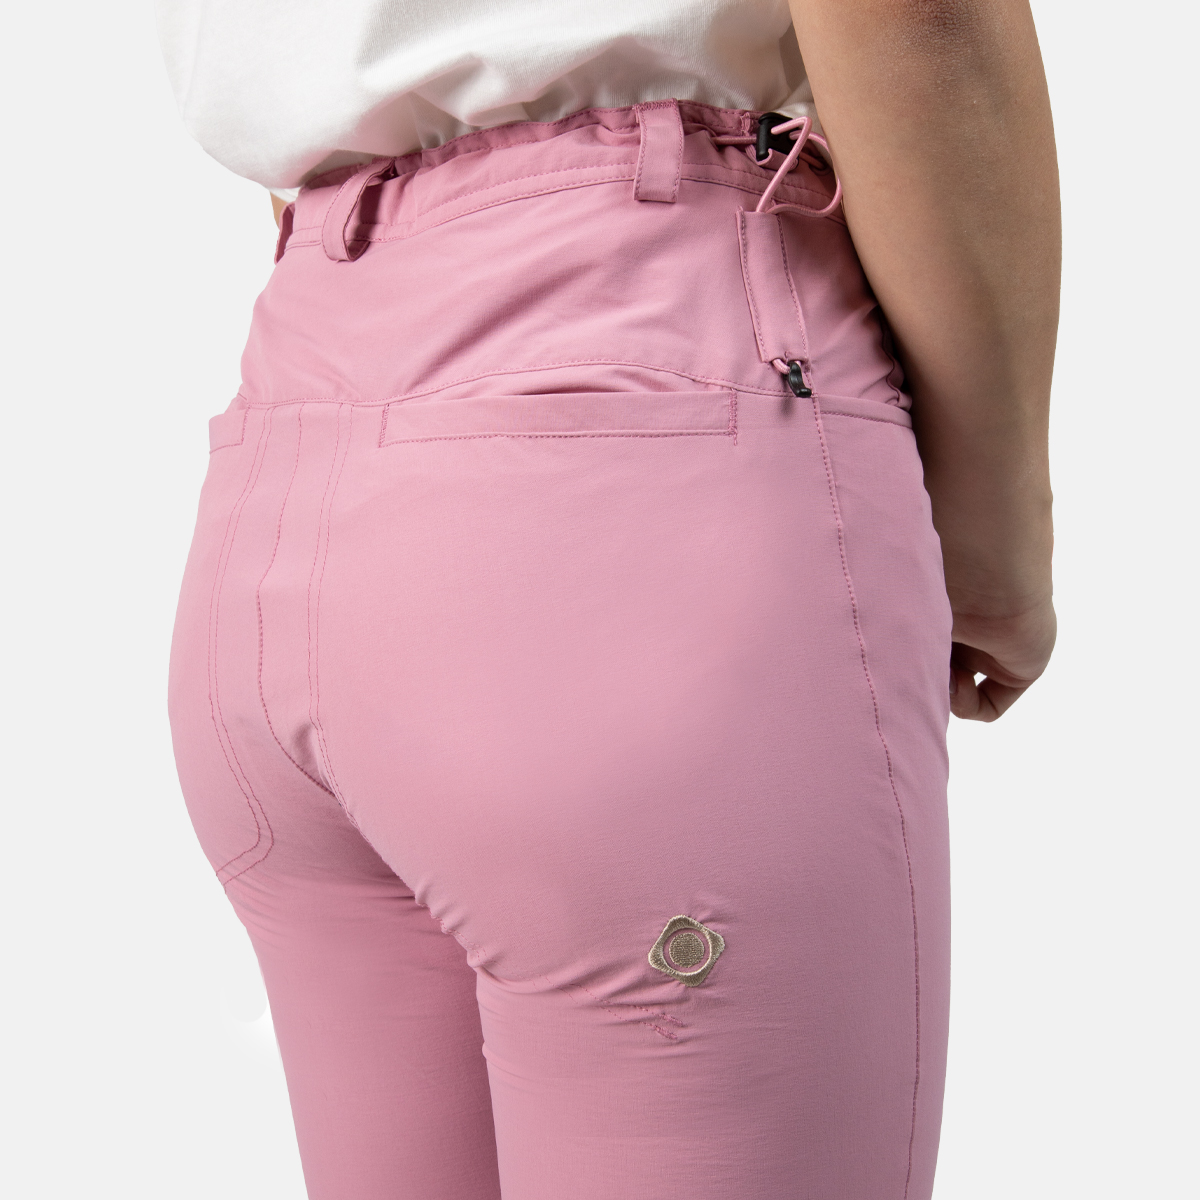 Pantalón ROSA de Escalada y Trekking Mujer Saona. Comprar online.